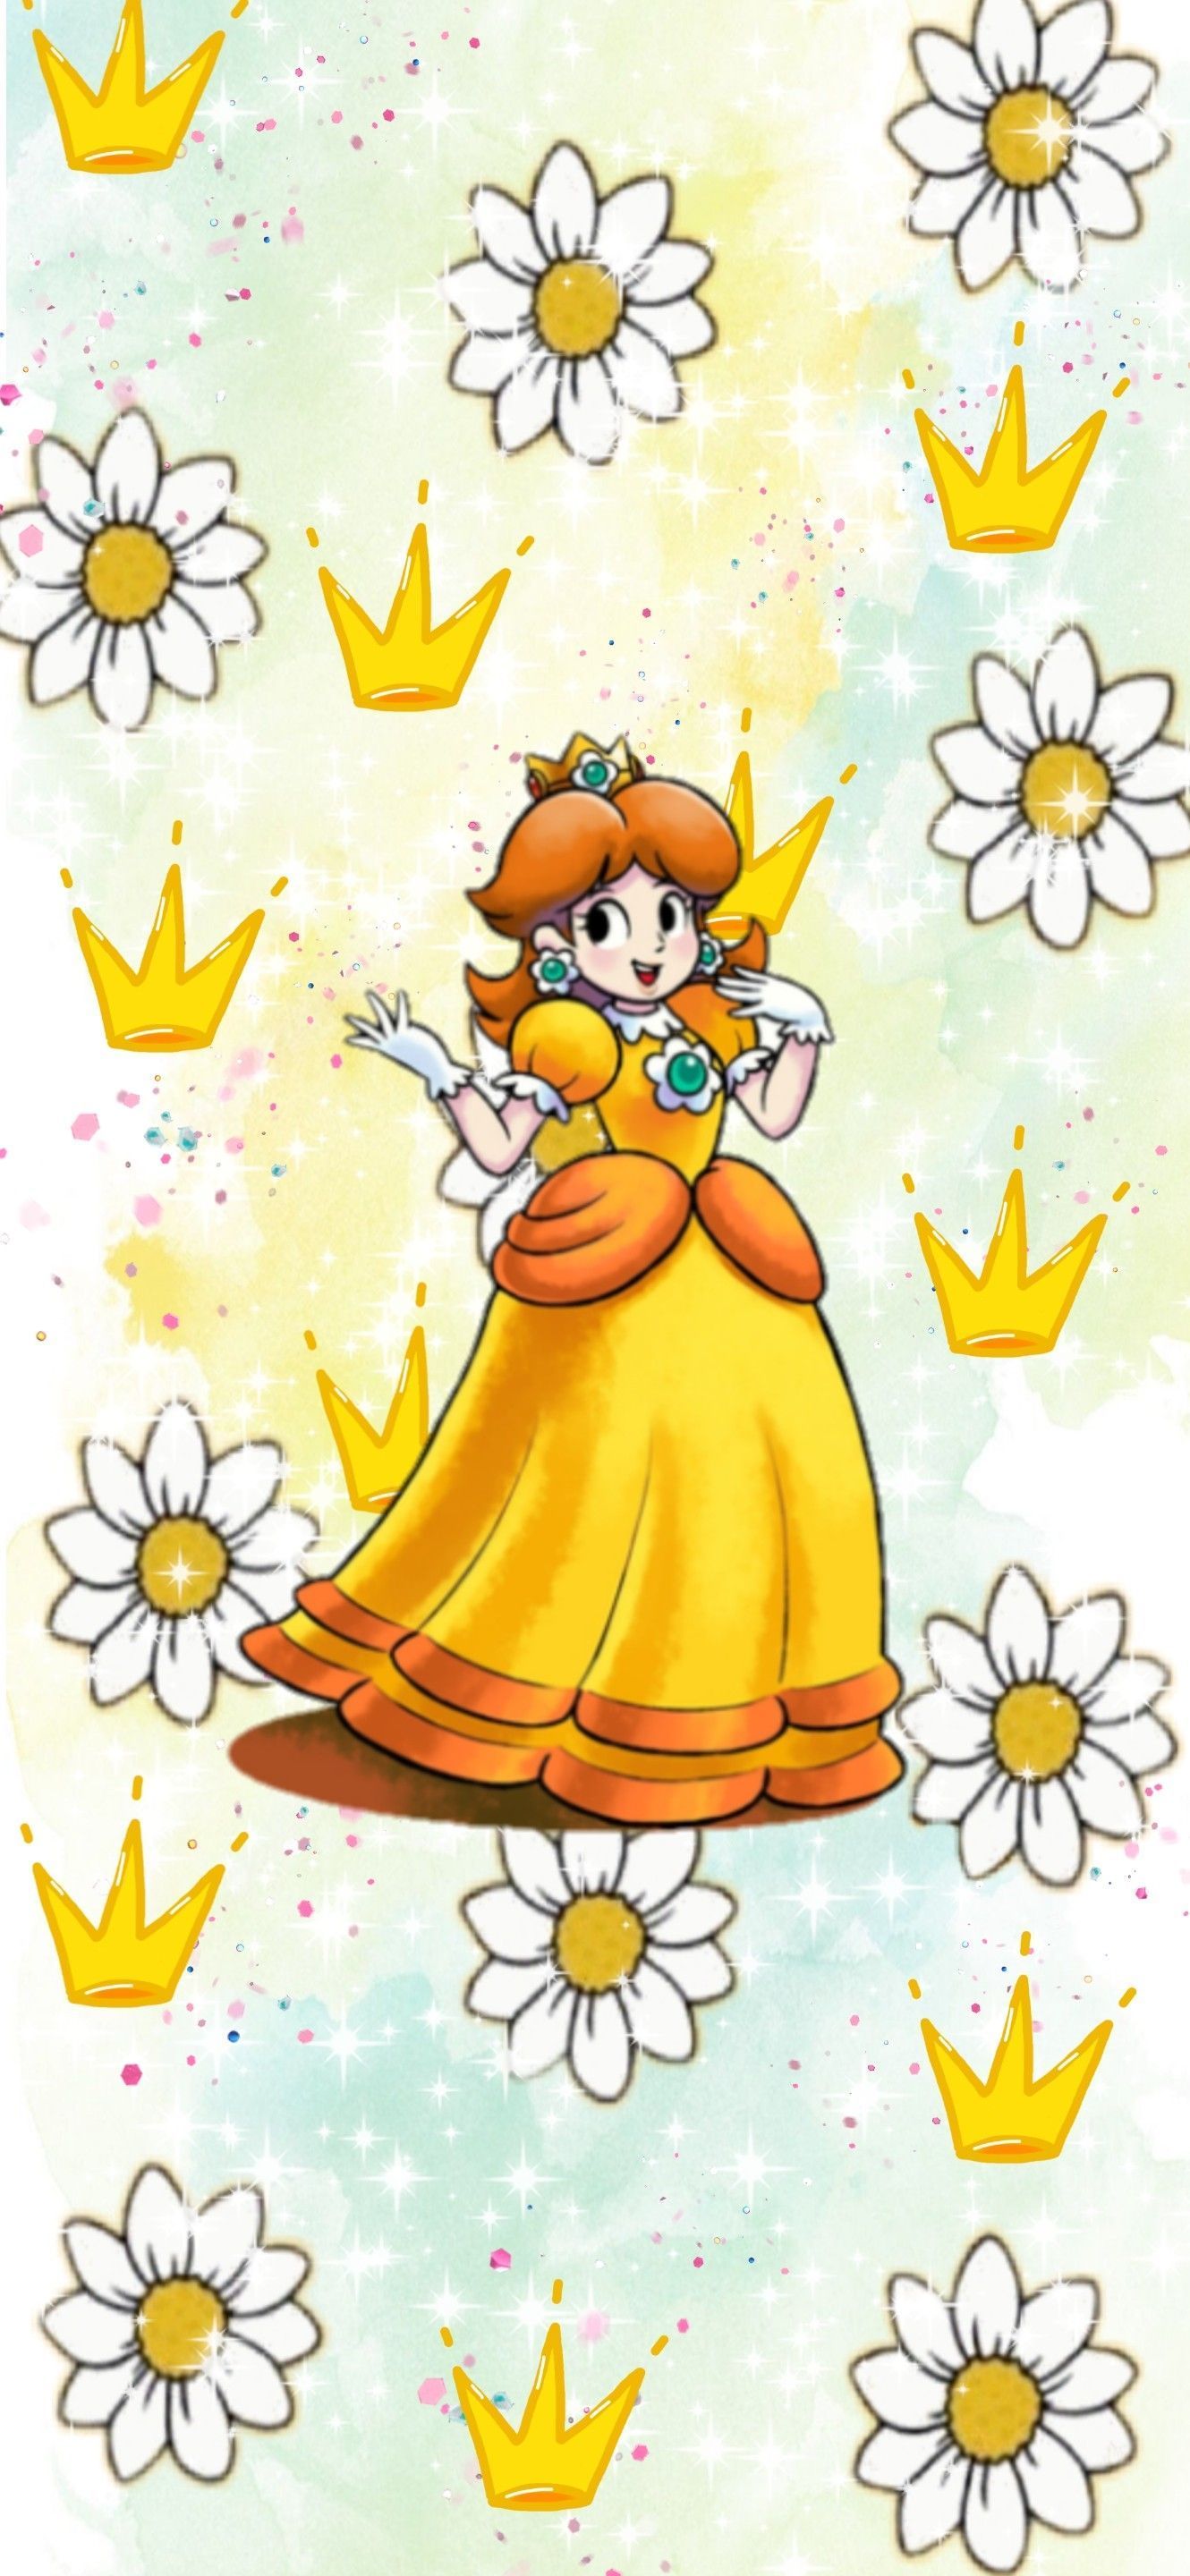 Nintendo Princess Daisy yellow aesthetic Phone Wallpaper. Daisy drawing, Princess daisy, Daisy wallpaper. - Nintendo